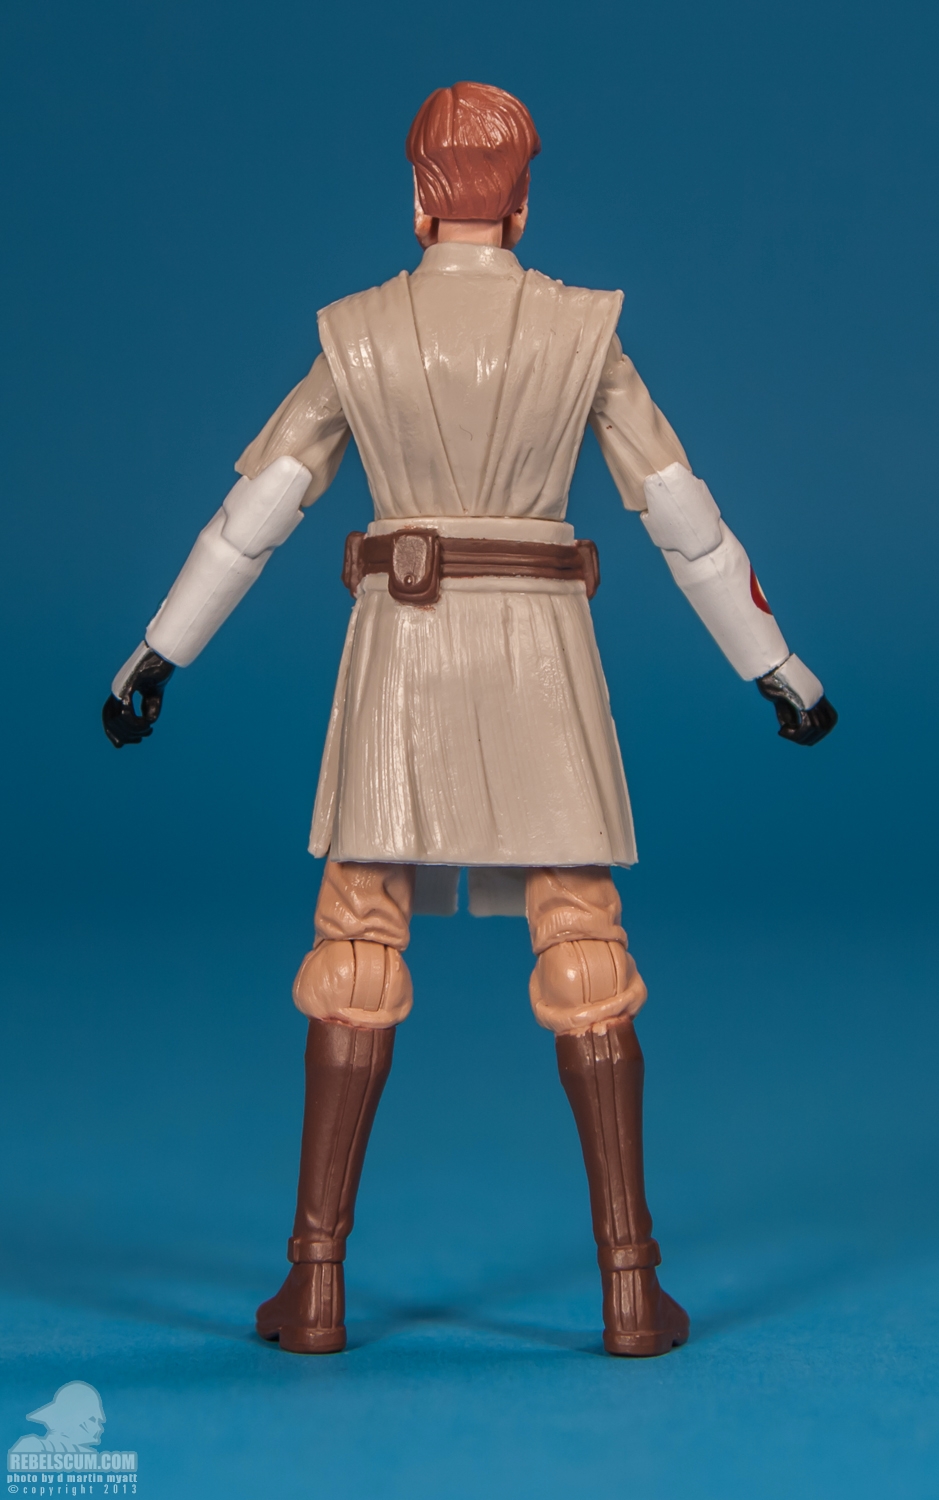 CW01_2013_Obi-Wan_Kenobi_ The_Clone_Wars_Star_Wars_Hasbro-04.jpg